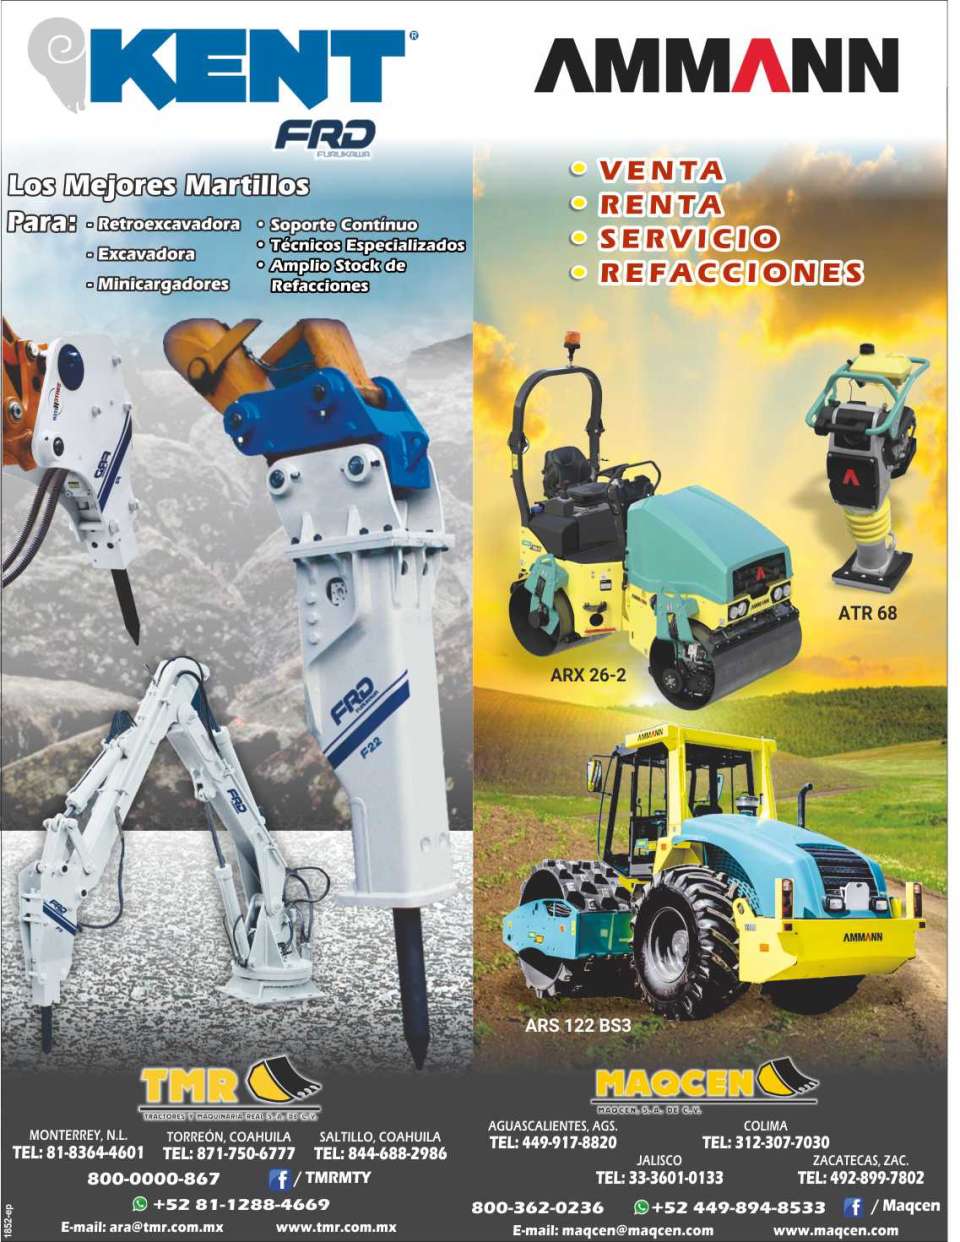 Tractores y Maquinaria Real. Los mejores martillos para retroexcavadoras, excavadoras, minicargadores. Compactadores en venta, renta, servicios, refacciones.